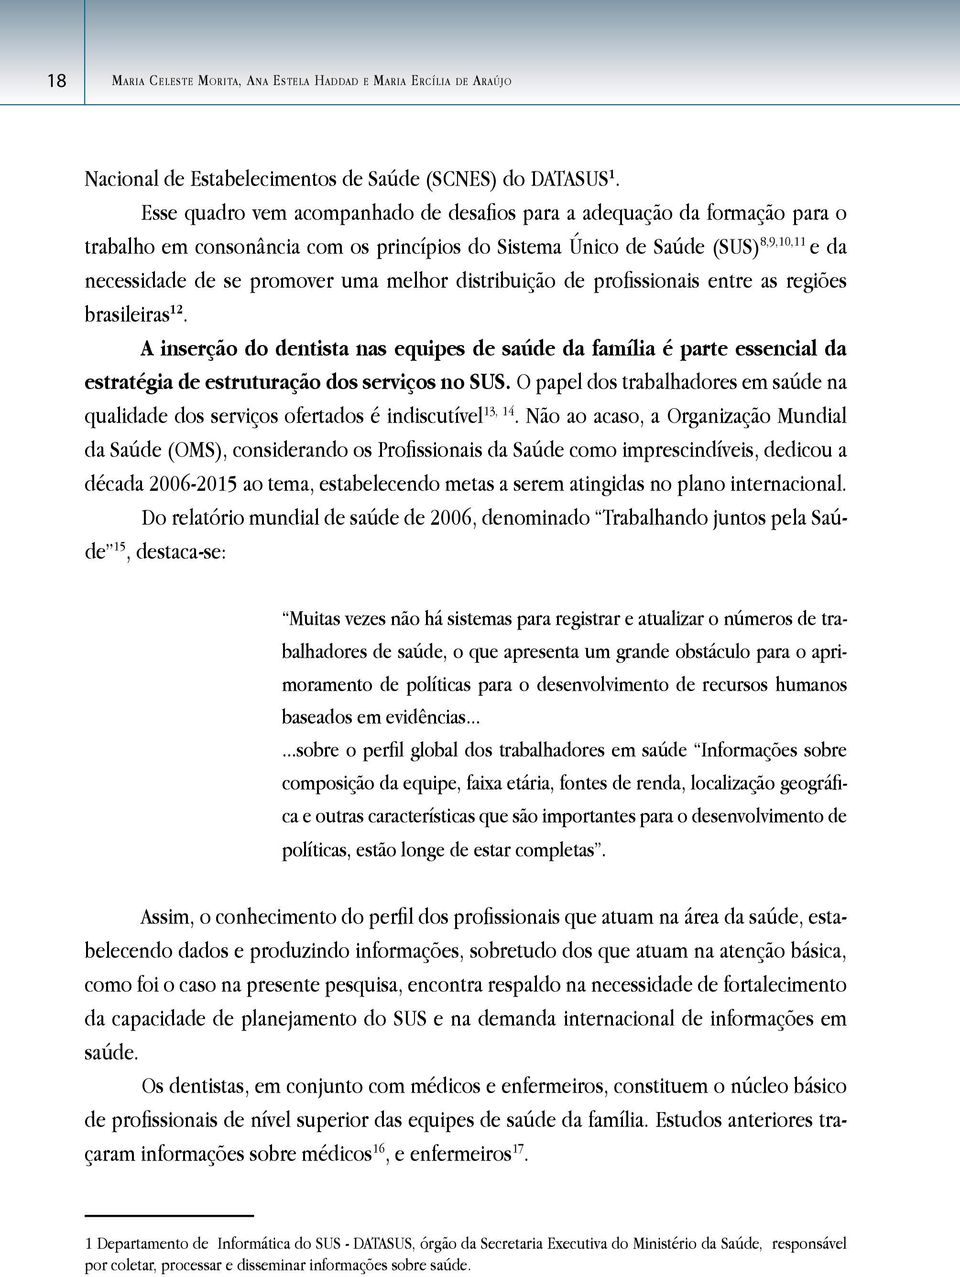 melhor distribuição de profissionais entre as regiões brasileiras 12. A inserção do dentista nas equipes de saúde da família é parte essencial da estratégia de estruturação dos serviços no SUS.